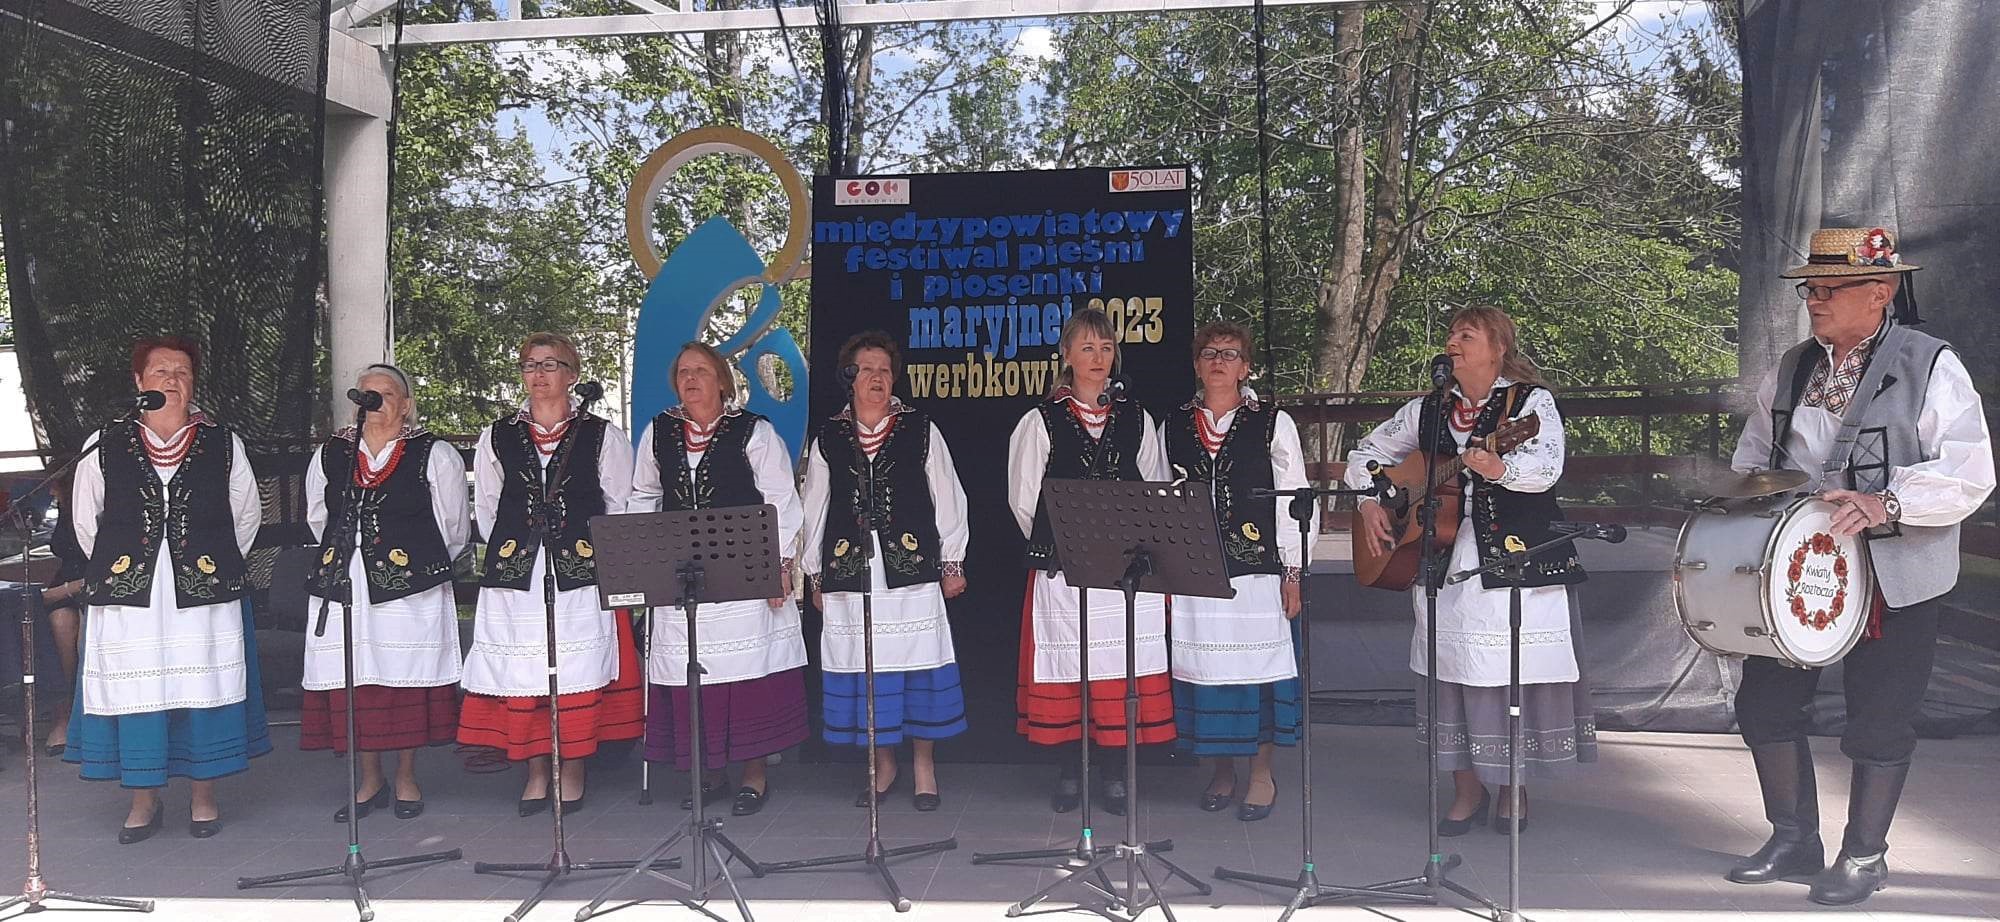 XI Międzypowiatowy Festiwal Pieśni i Piosenki Maryjnej dla dorosłych w Werbkowicach